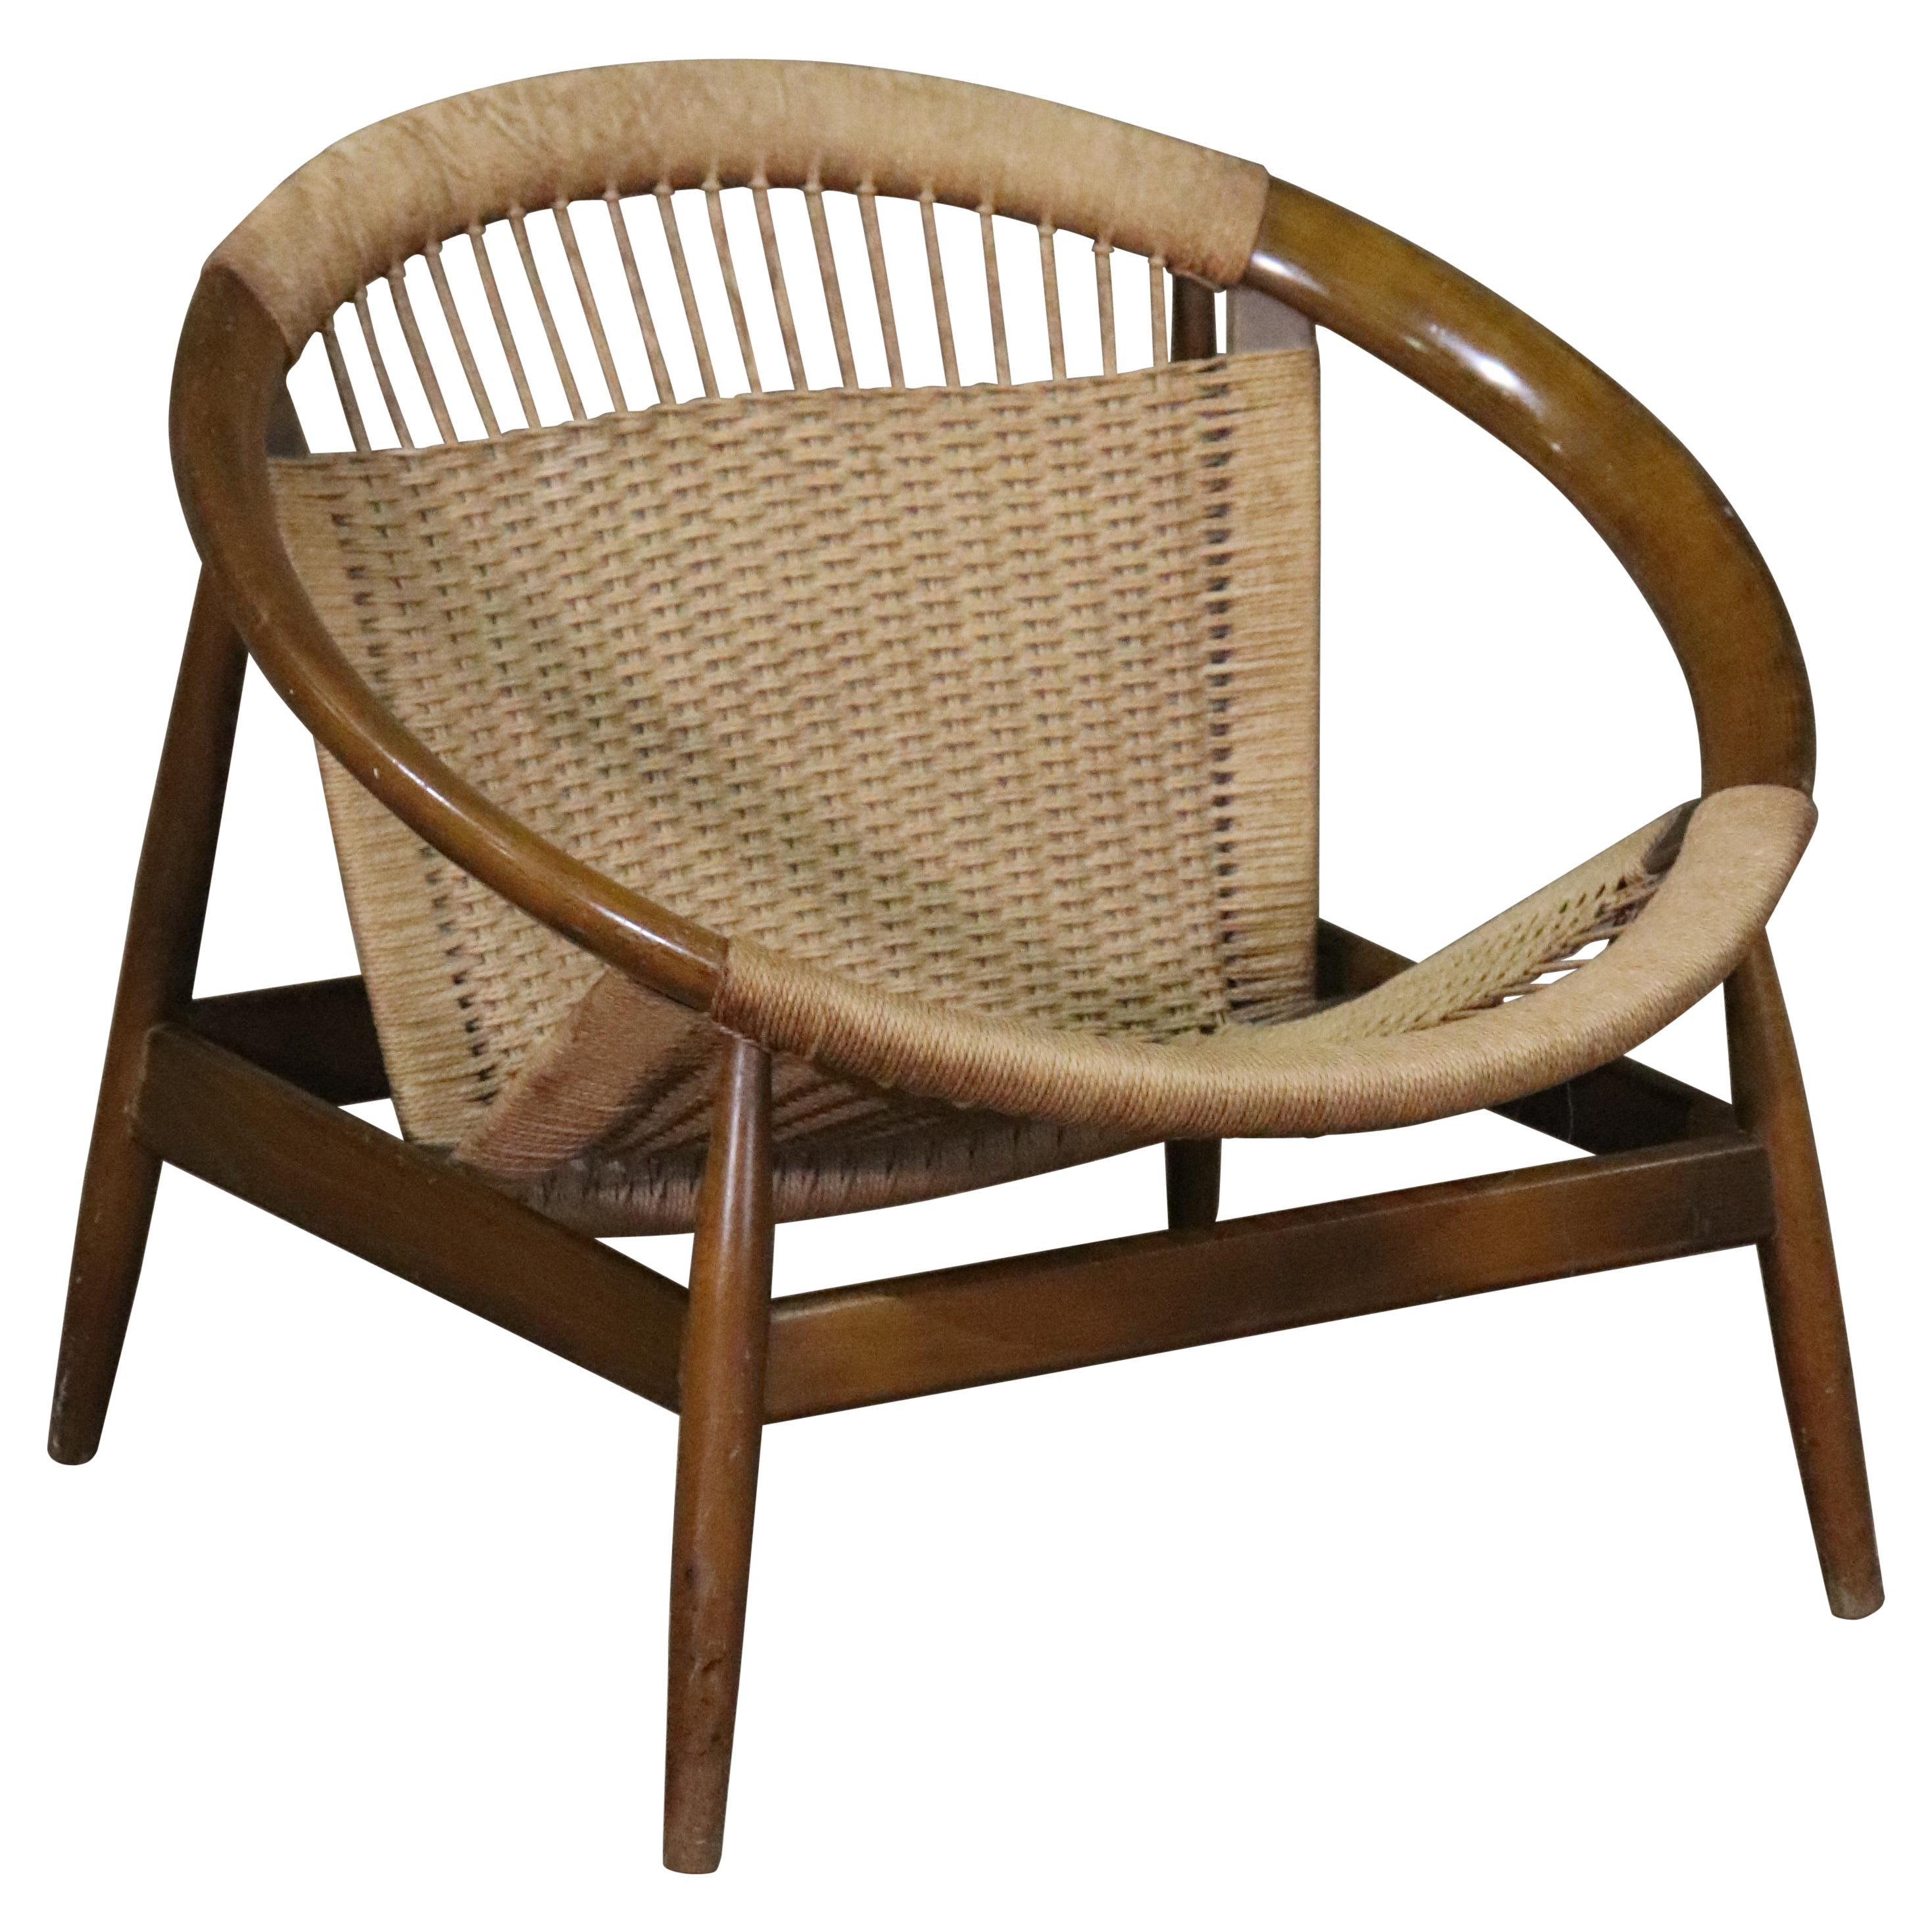 Illum Wikkelsø Ringstol "Hoop" Chair For Sale